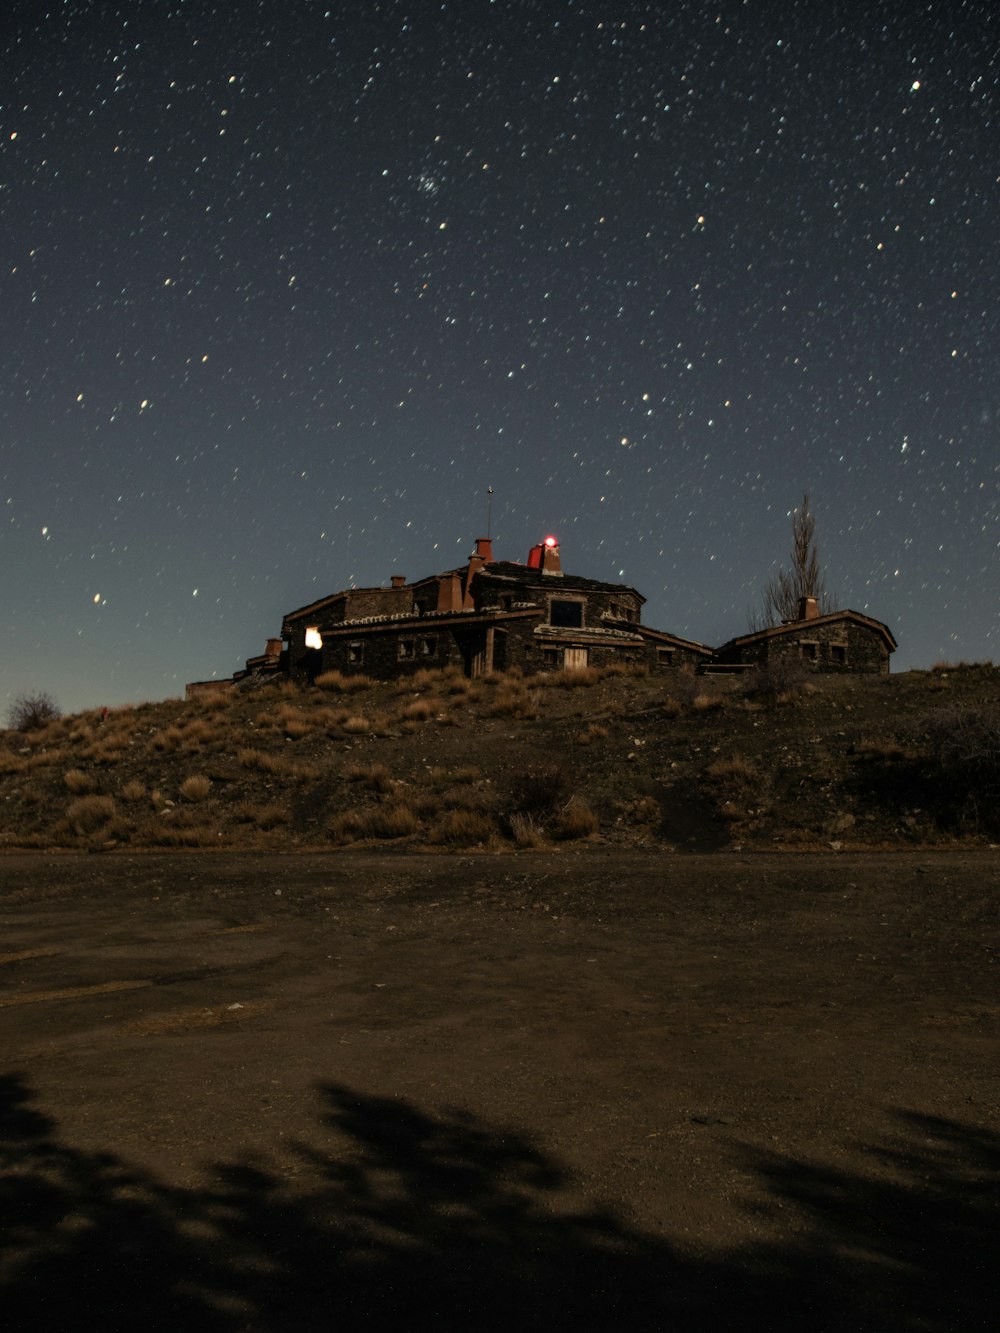 edifício na montanha sob a noite estrelada